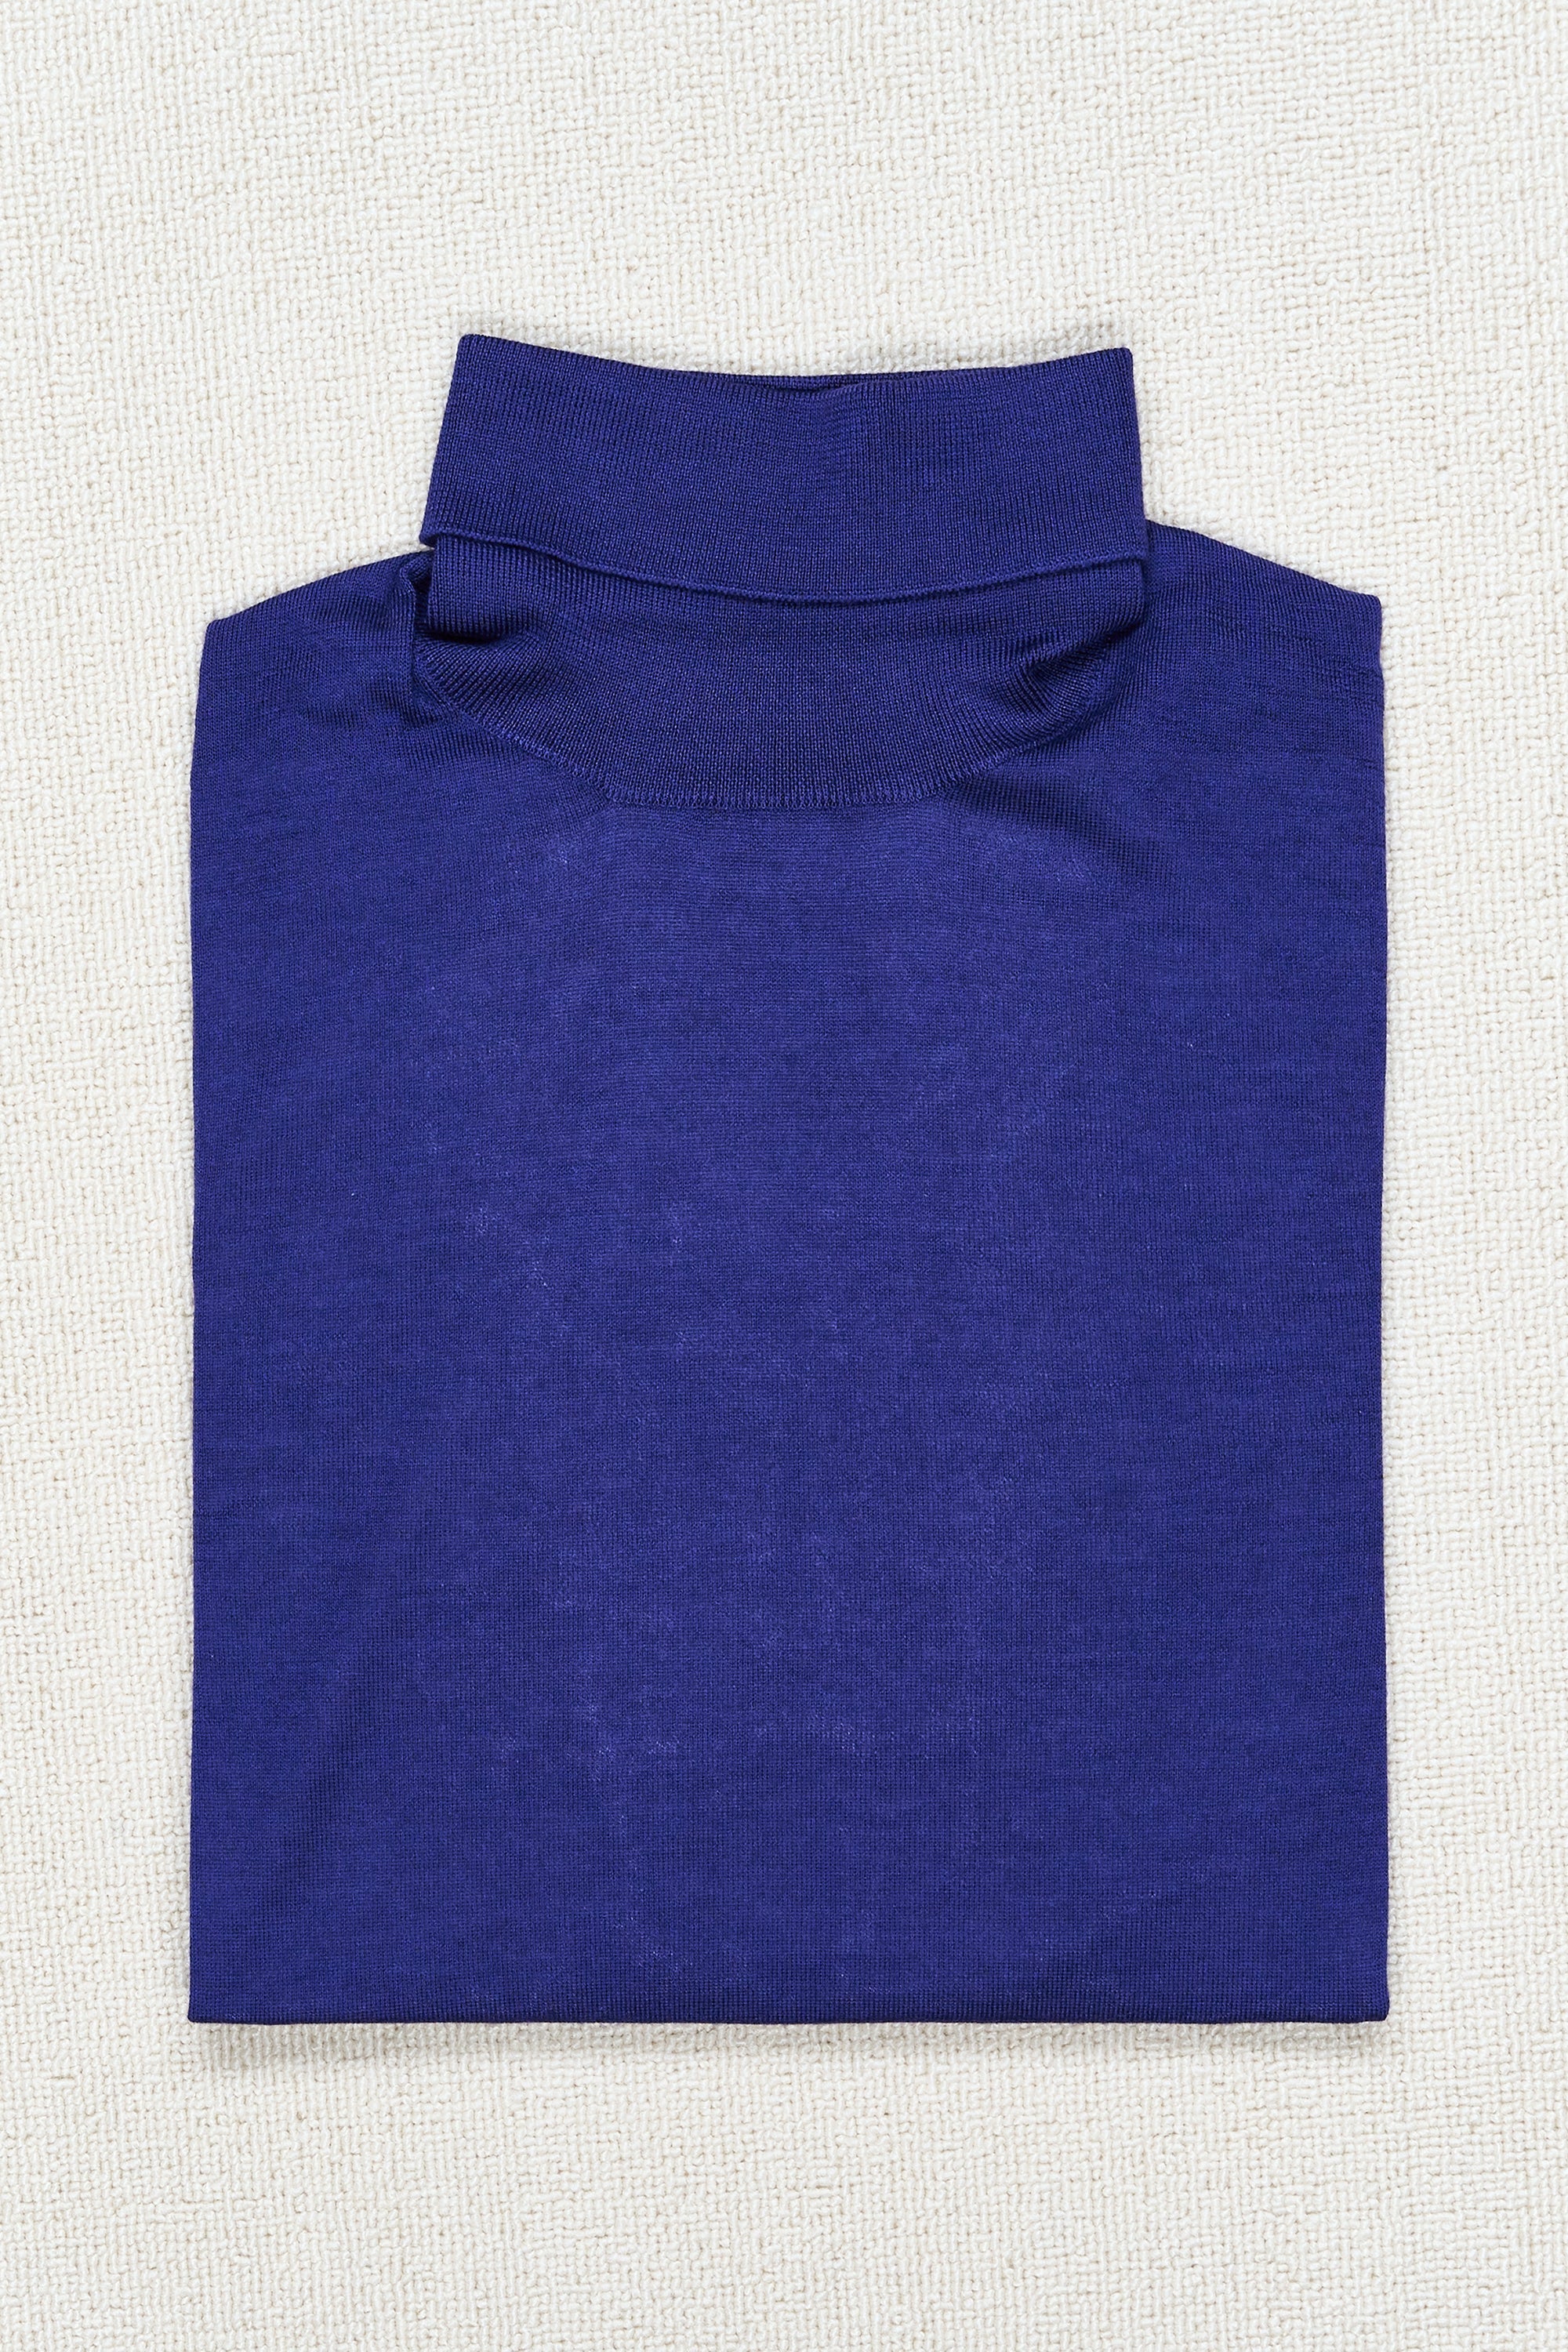 Caruso MA35 Purple-Blue Cashmere/Silk Turtle Neck Sweater